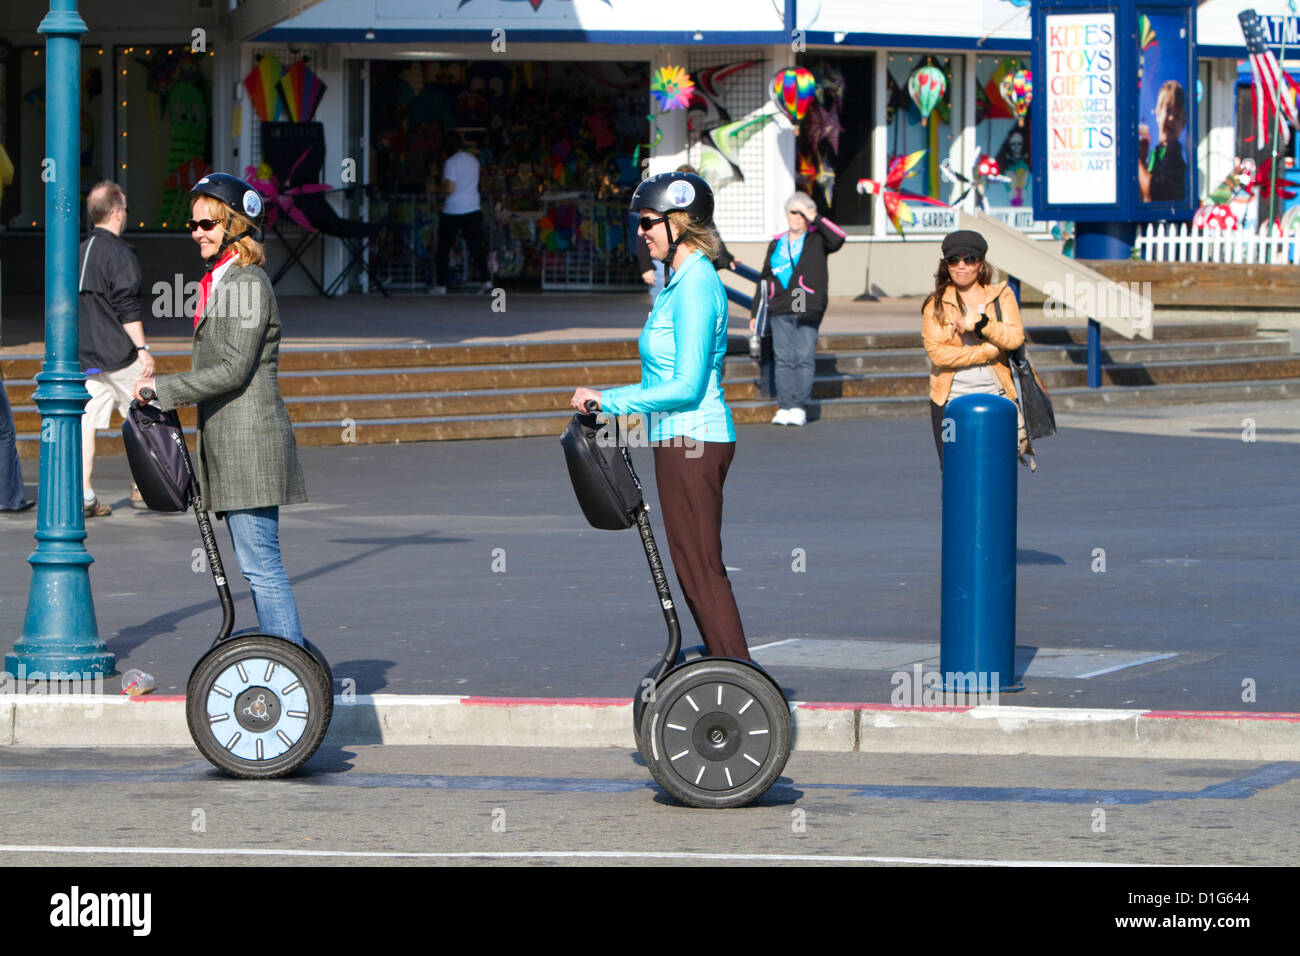 Les gens ride Gyropode PT près de Pier 39 à San Francisco, Californie, USA. Banque D'Images